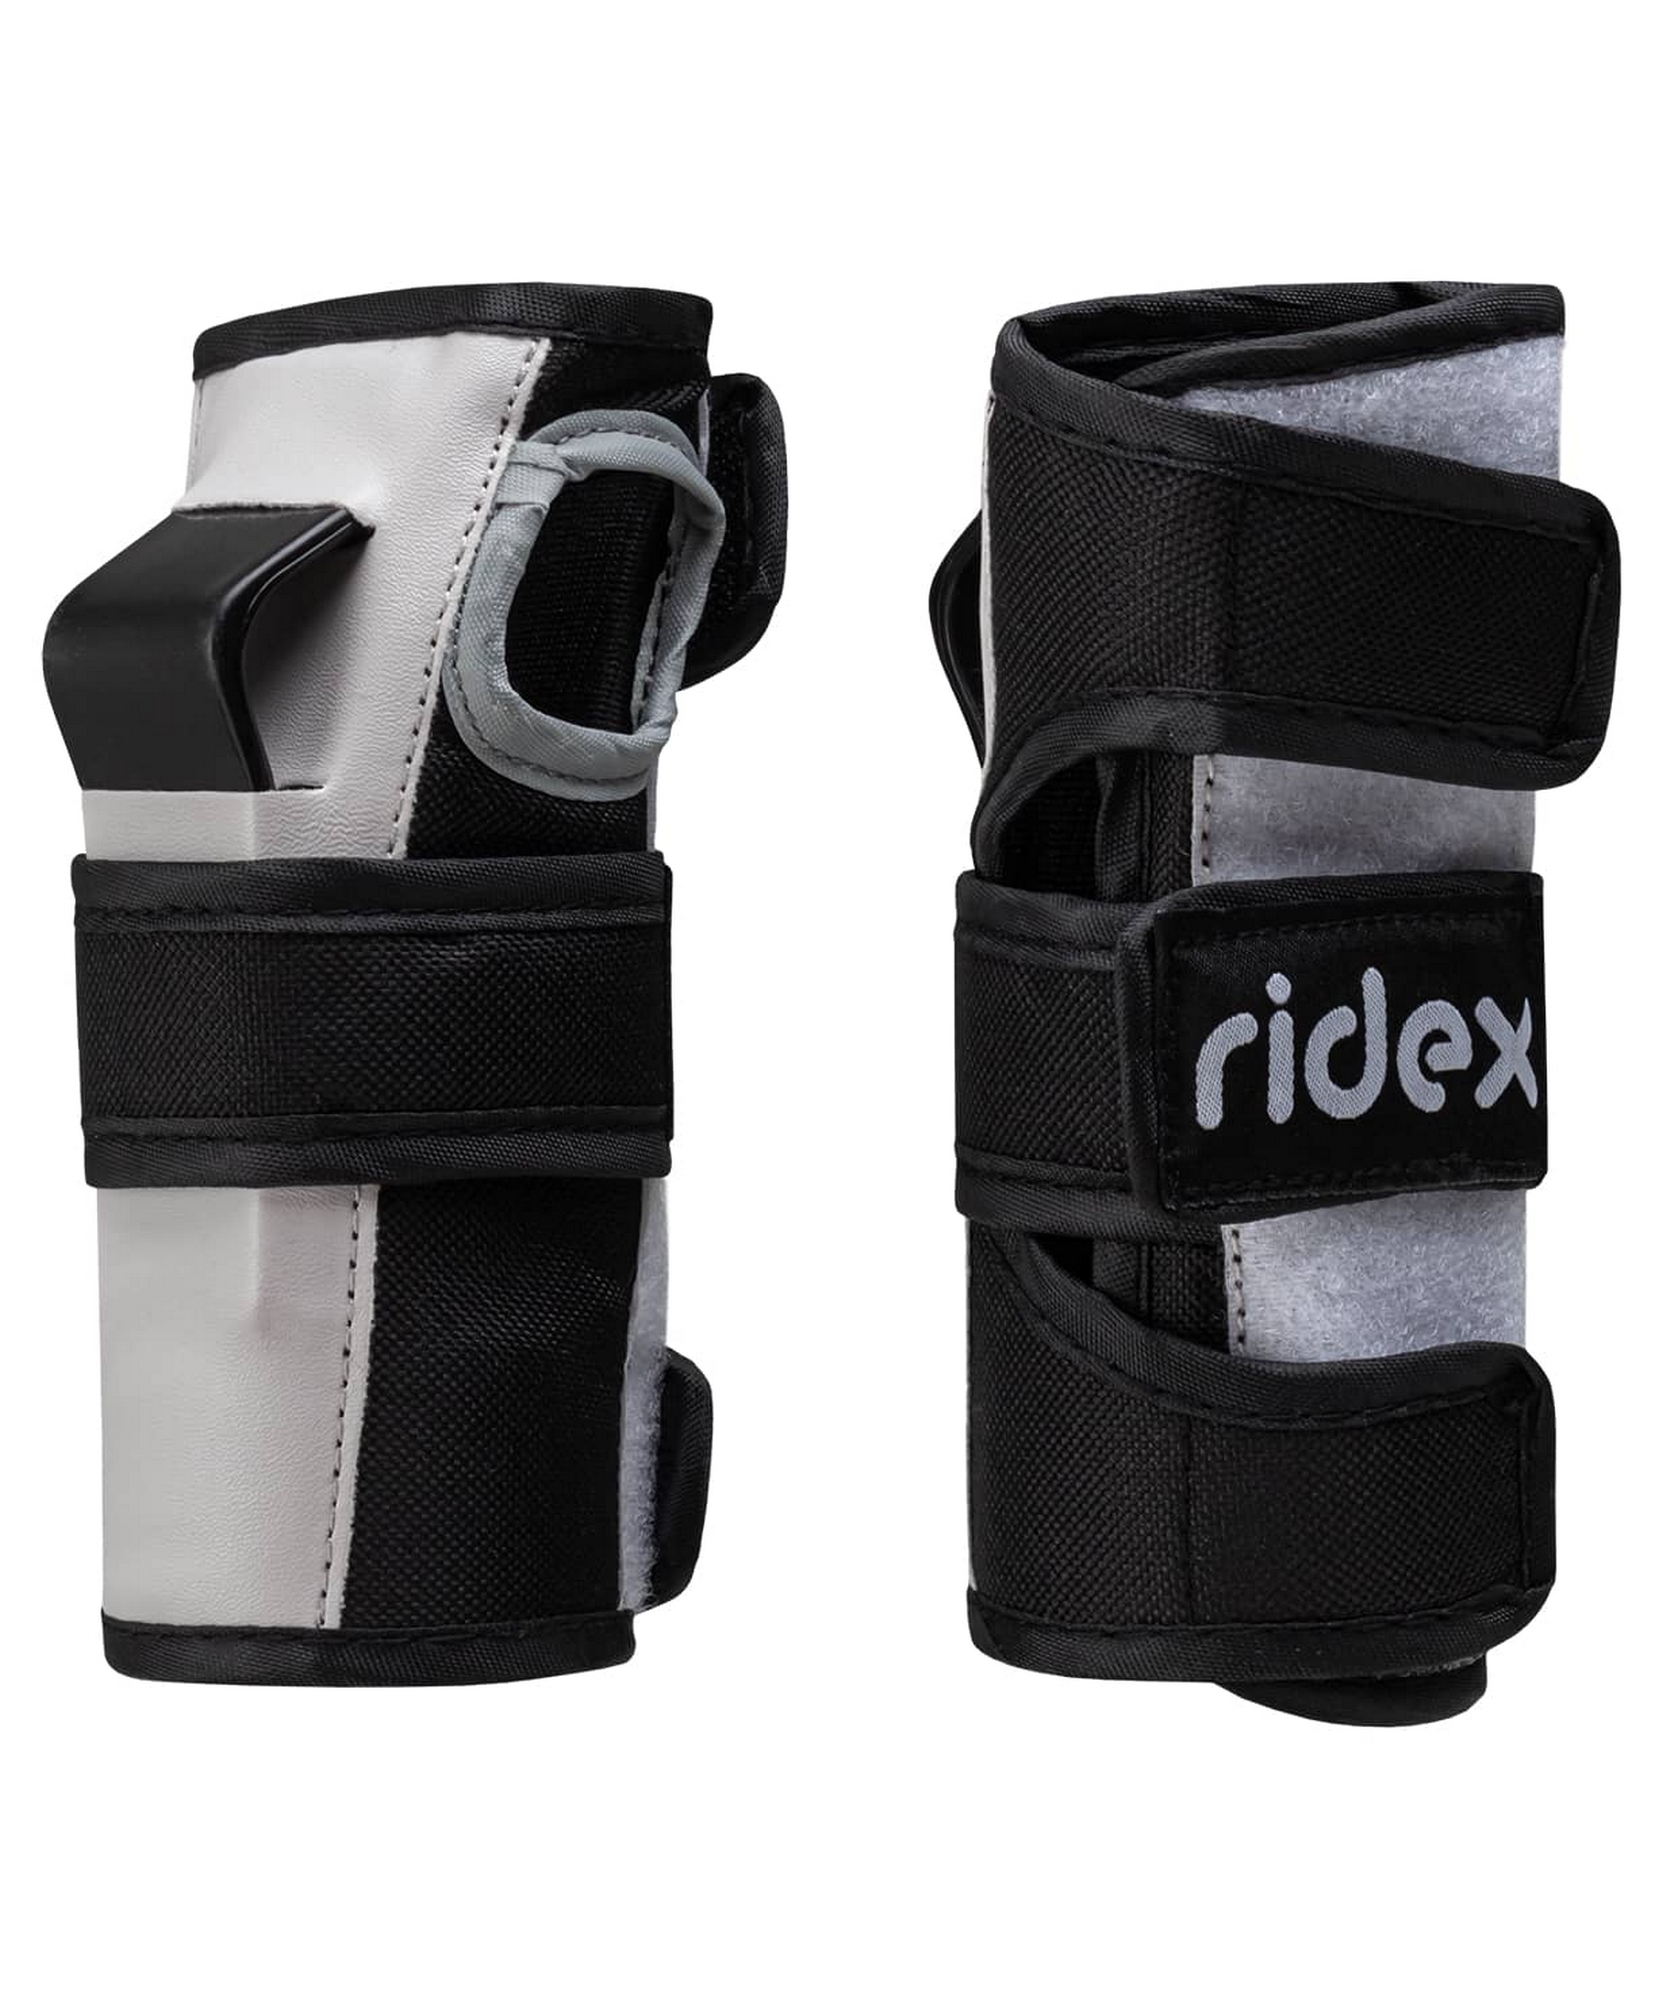 Комплект защиты Ridex SB белый 1663_2000